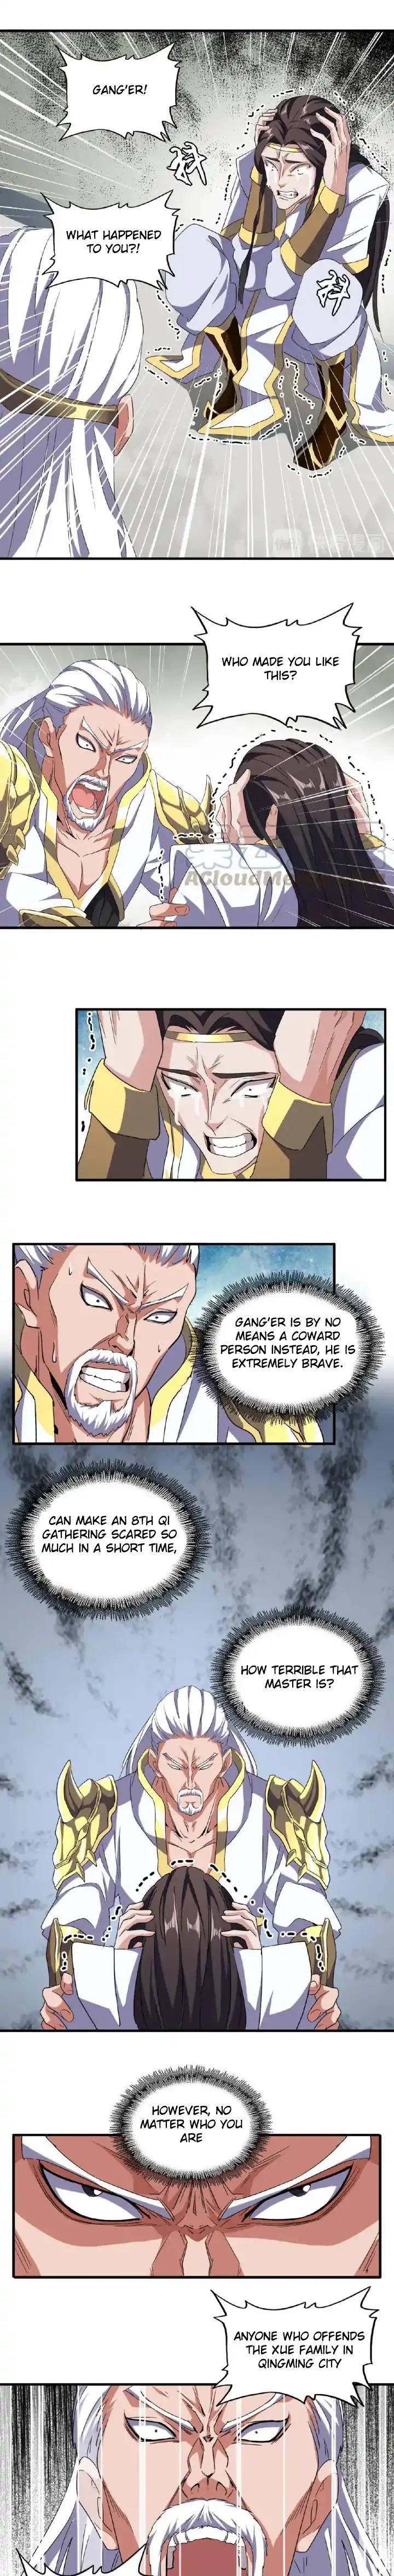 Magic Emperor Chapter 52 page 3 - Mangakakalot